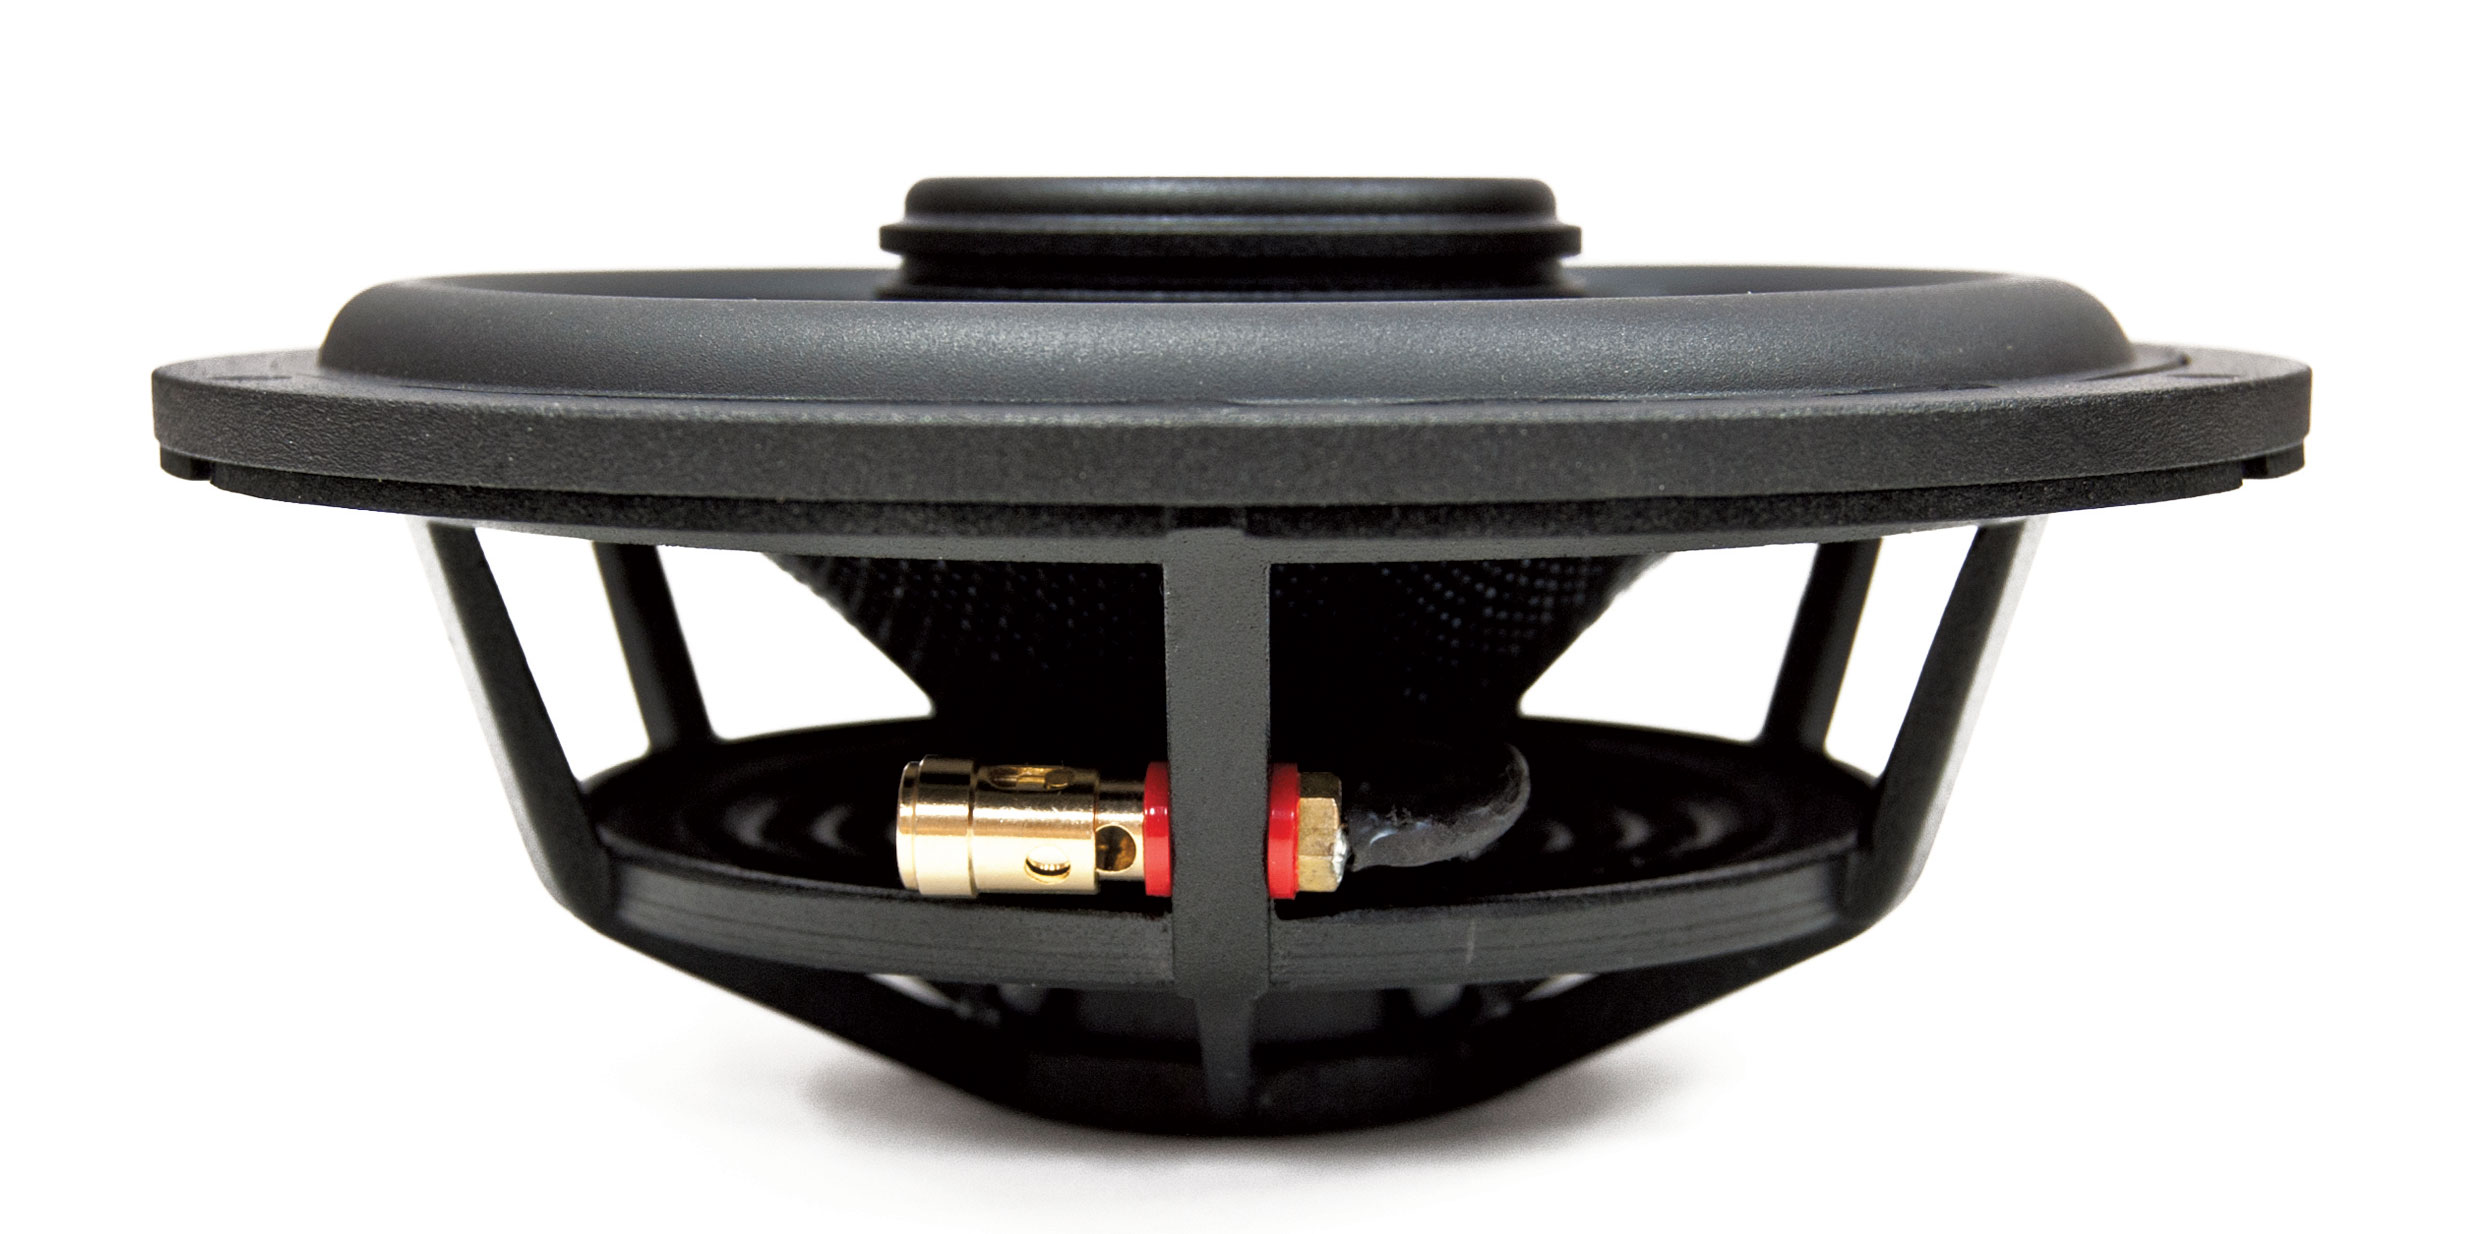 Illusion Audio Carbon Series C6 Component Speakers